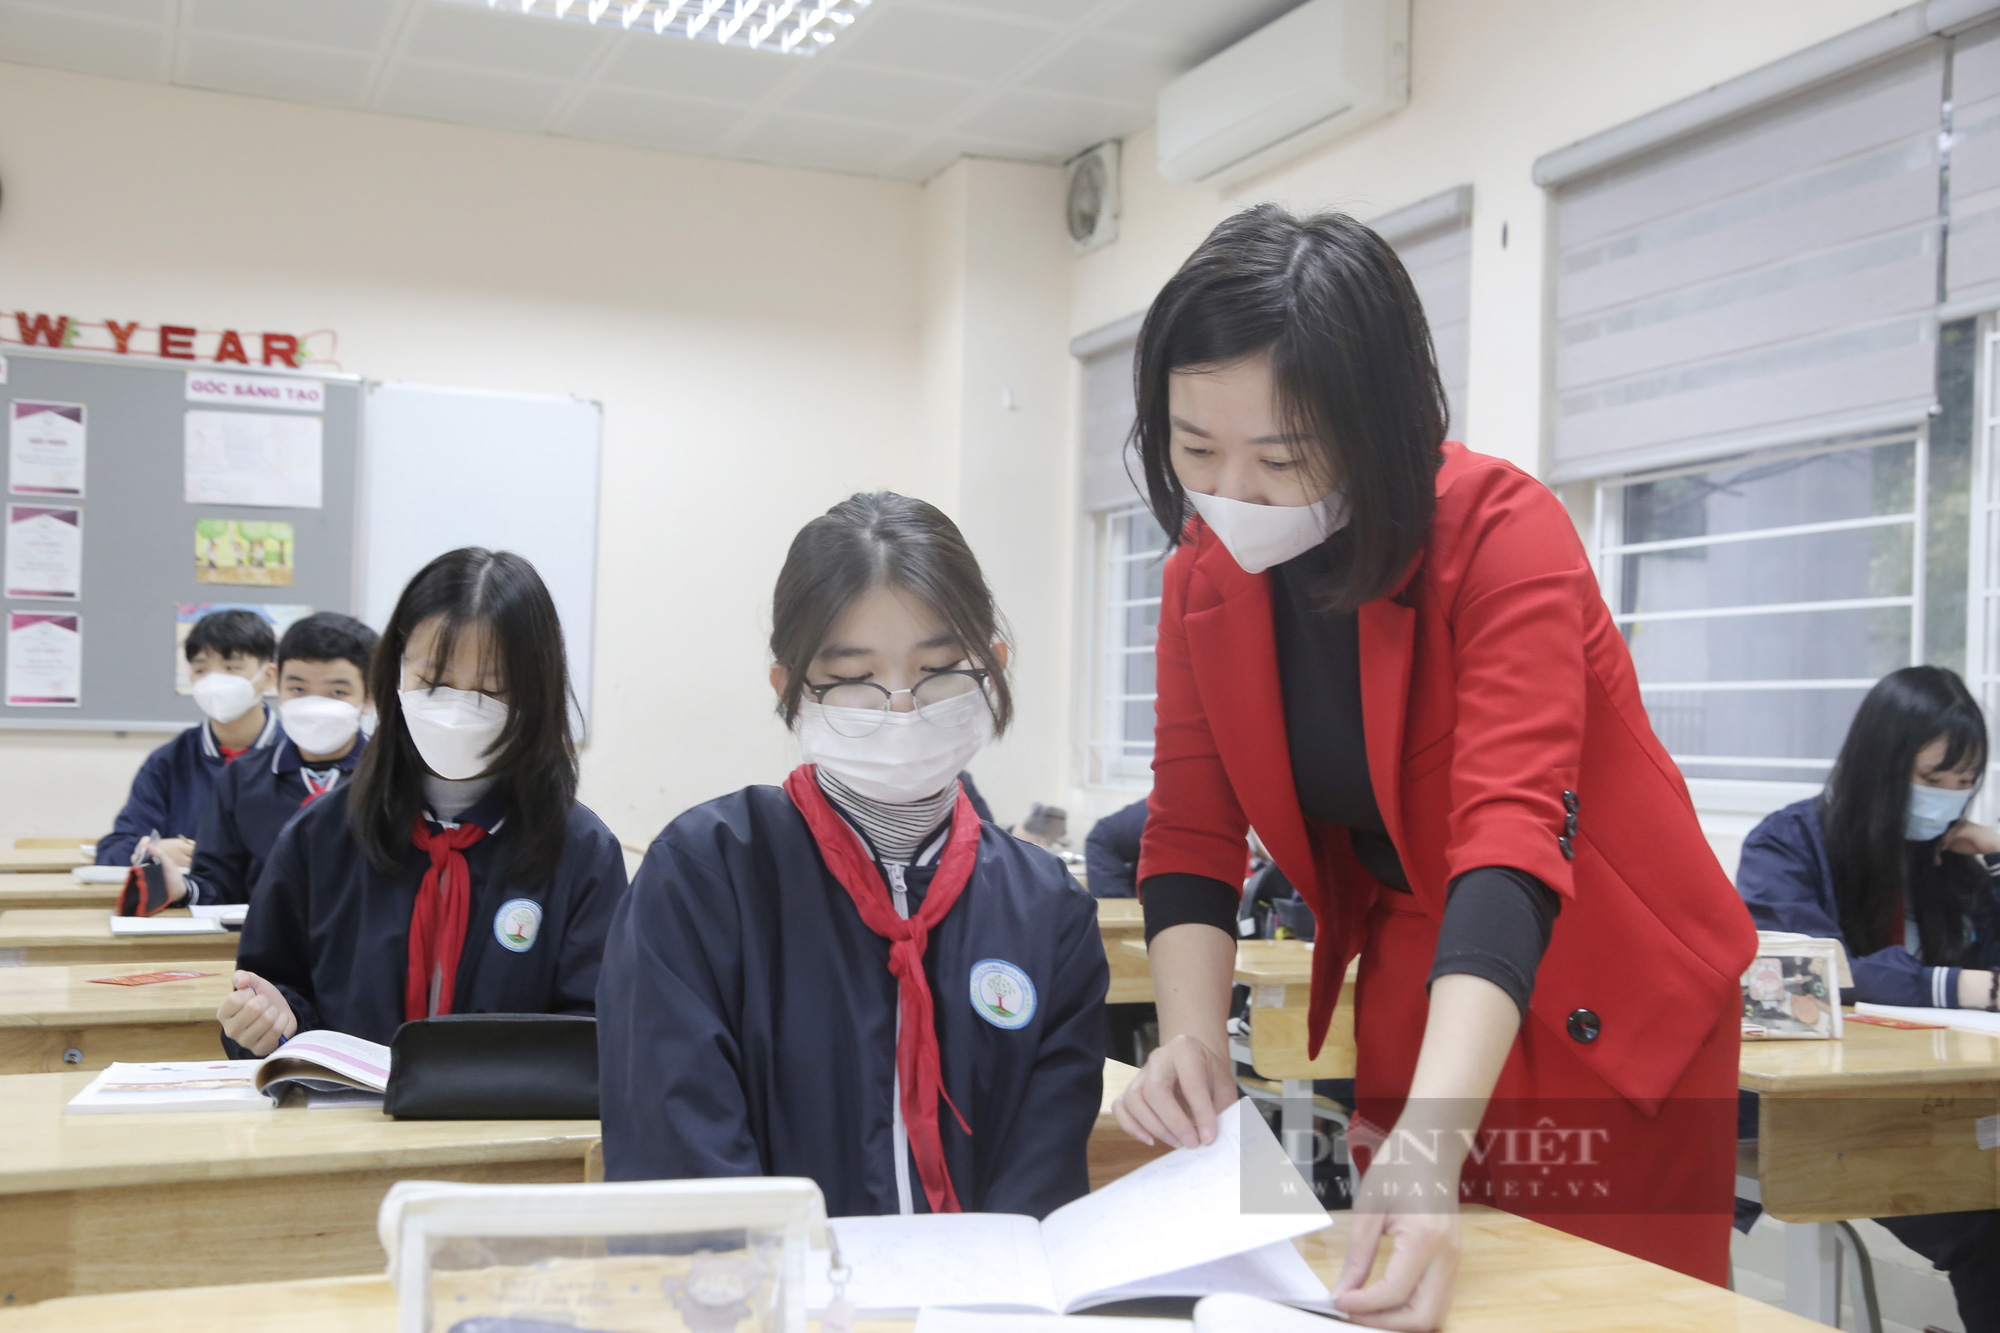 Học sinh Hà Nội đi học lại ngày 8/2: Nhà trường chuẩn bị kỹ càng, học sinh vui mừng nhận lì xì đầu năm - Ảnh 5.